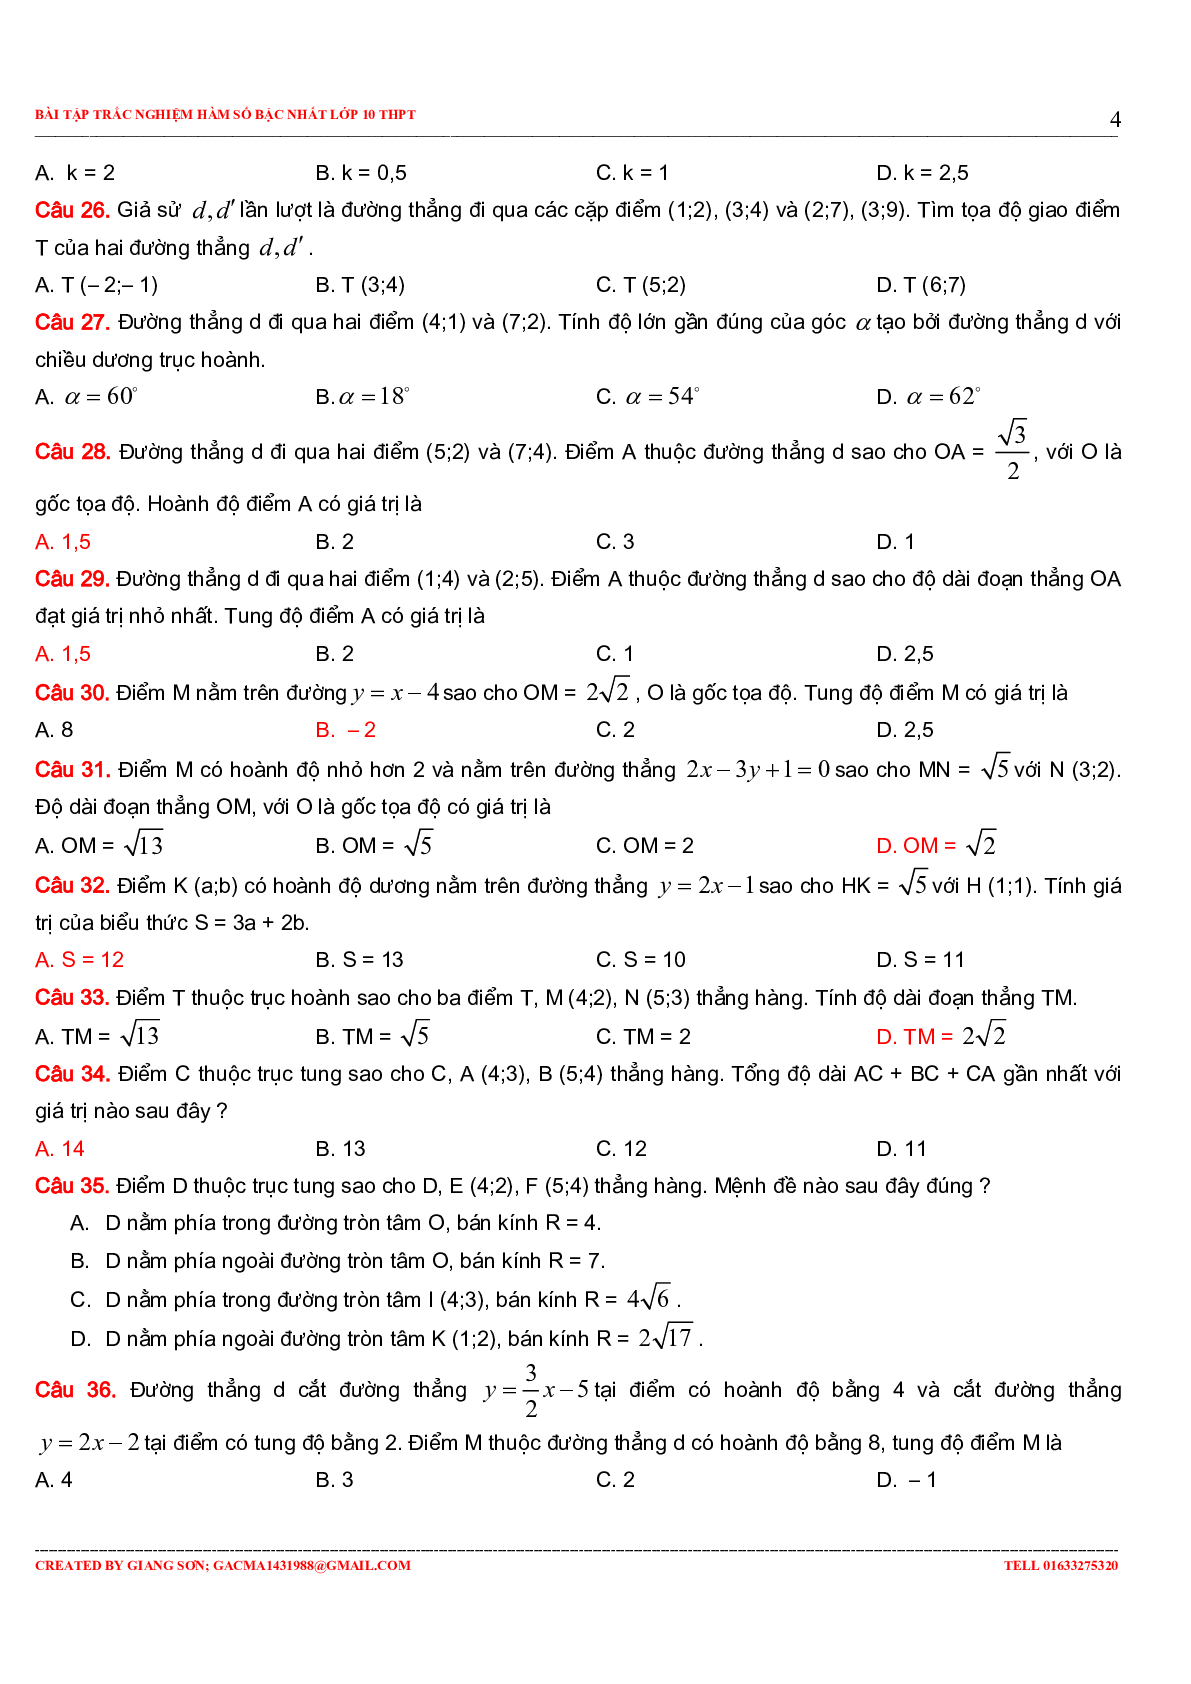 229 bài tập trắc nghiệm hàm số bậc nhất (trang 4)